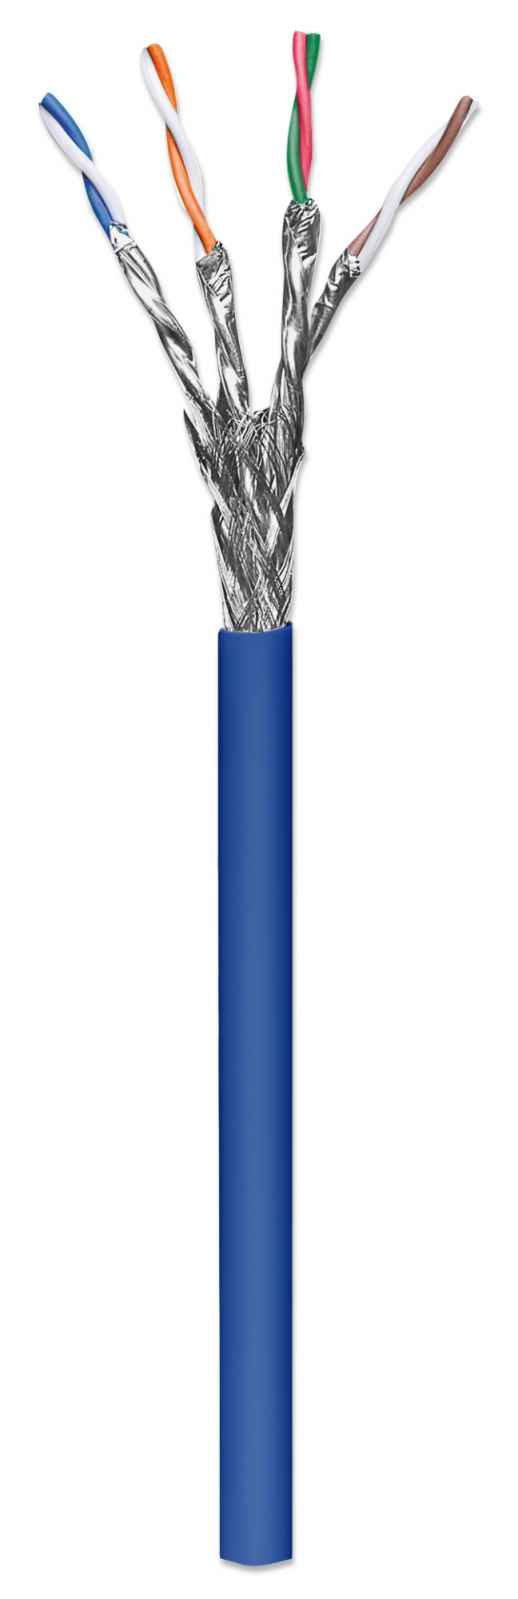 Bobina Intellinet Cat 6A Sftp 305M Solida Azul 100% Cobre (705042)